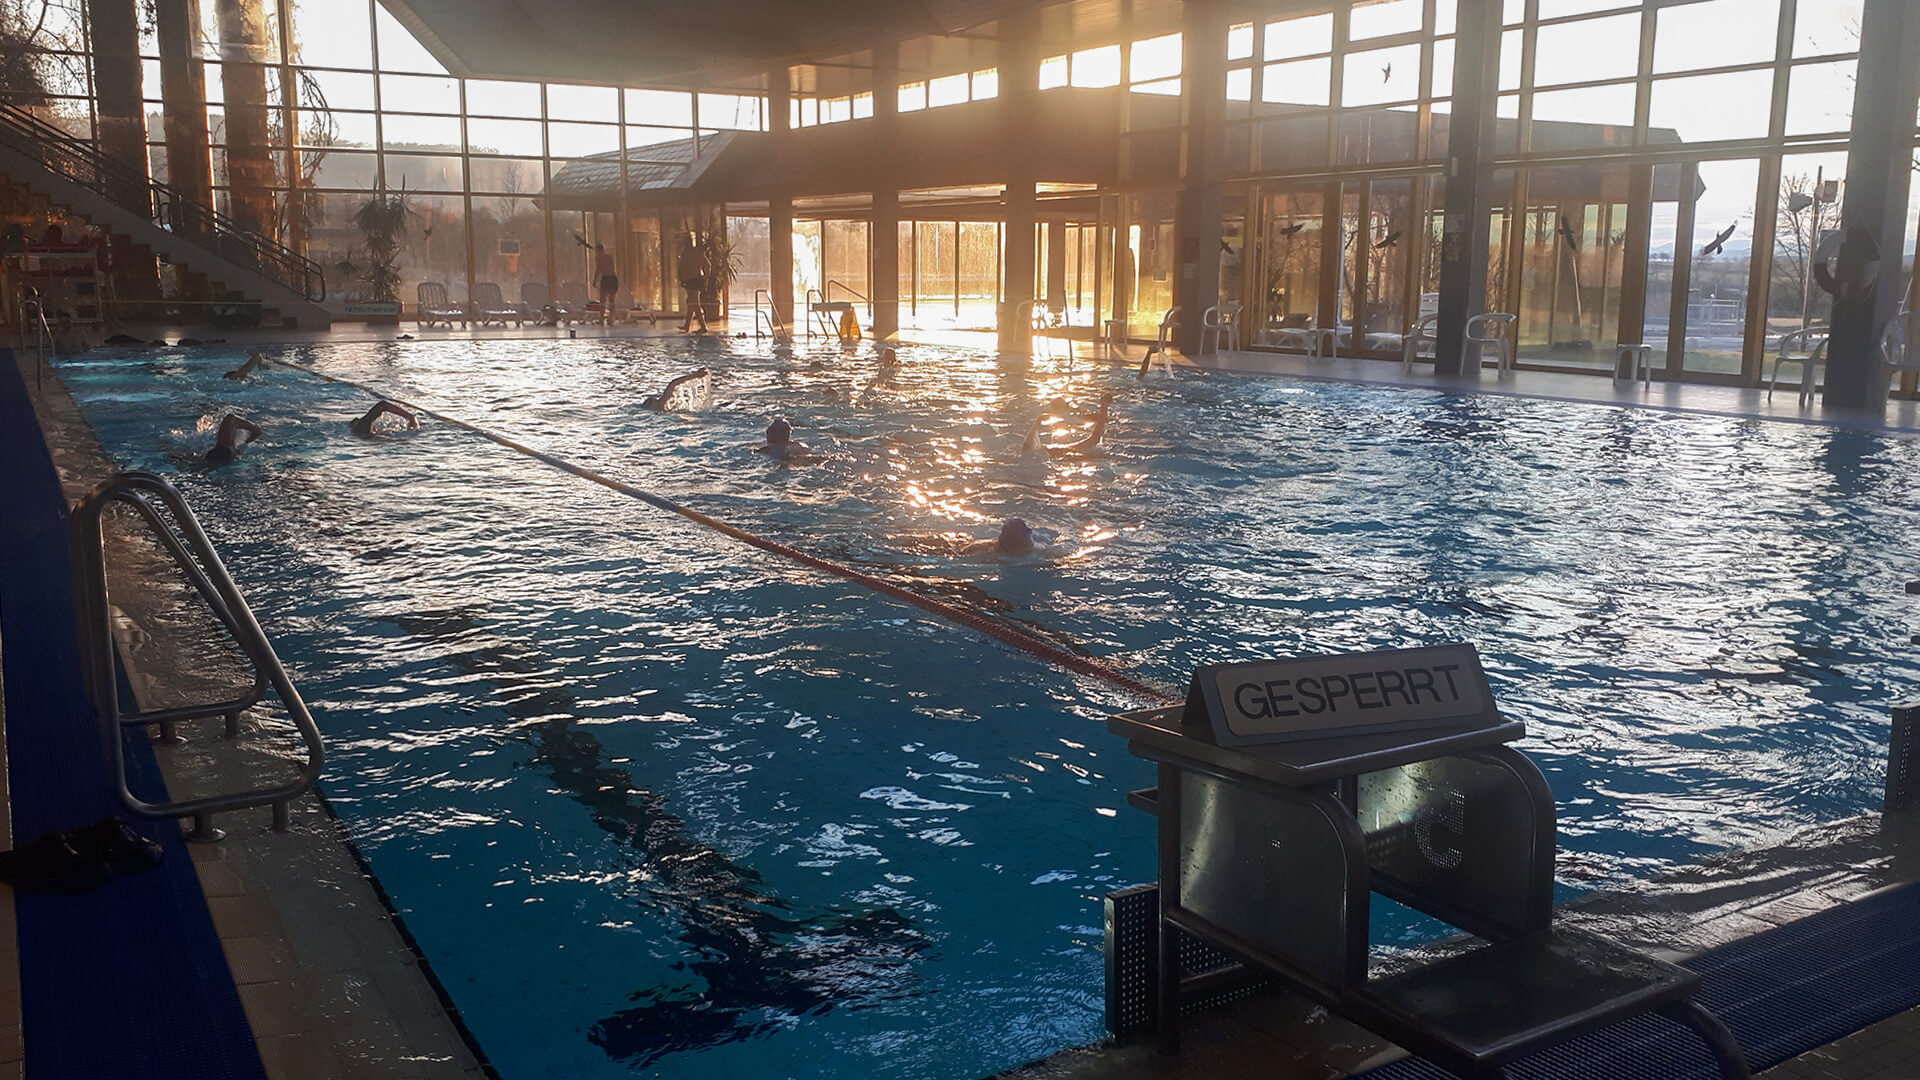 Hallen-Schwimmbecken mit mehreren Schwimmern, Startblock mit Gesperrt-Schild, verglaste Hallenwände